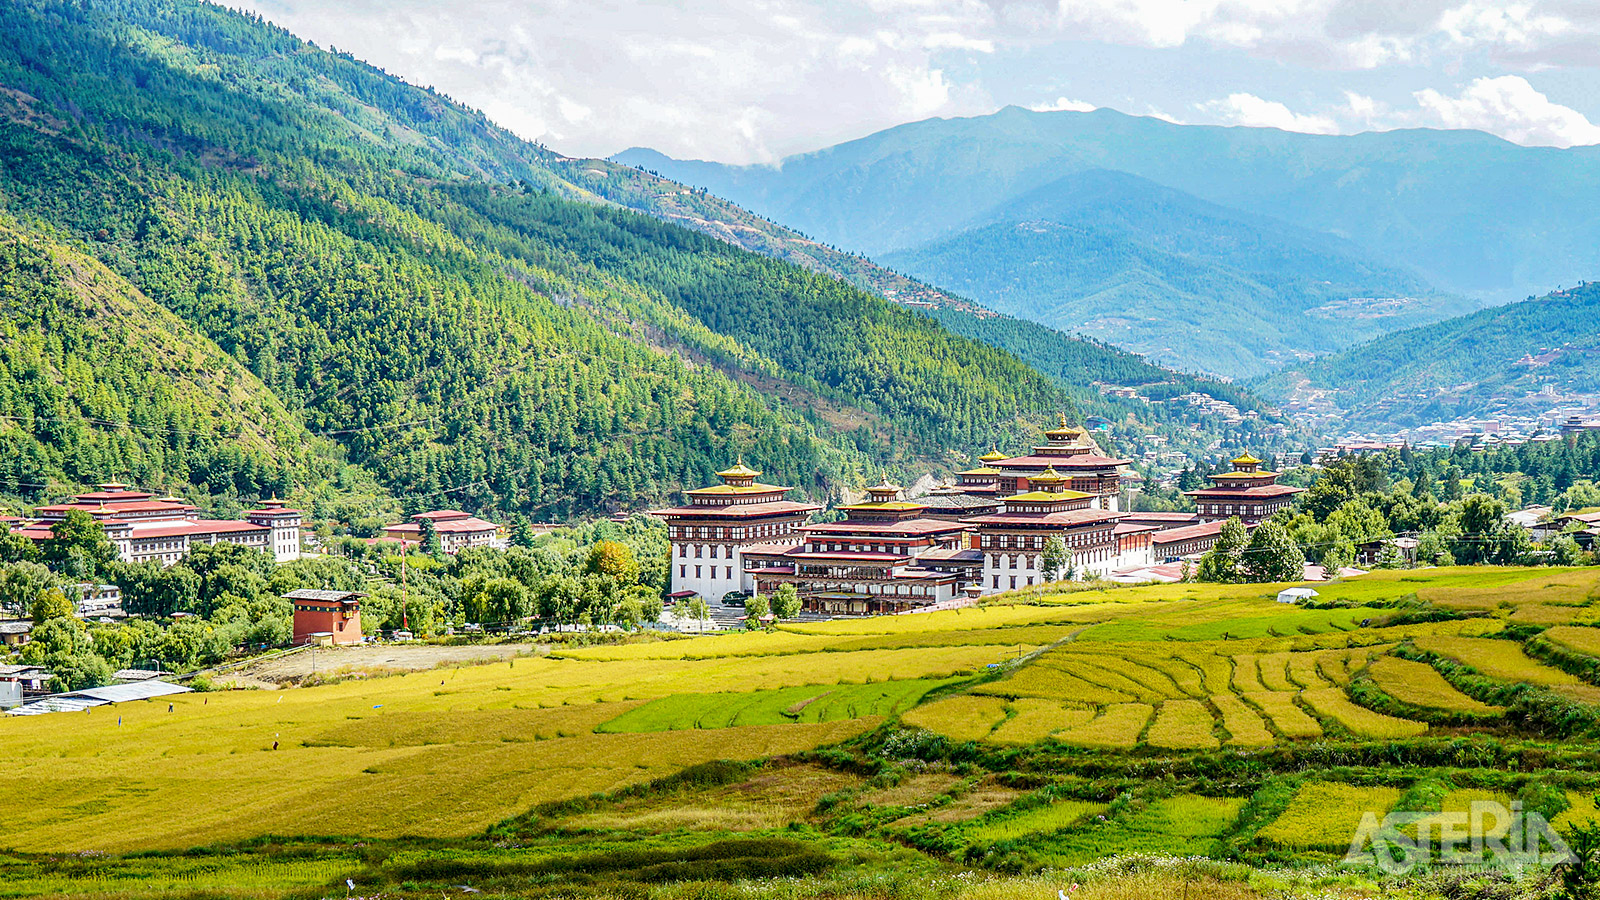 Tashicho dzong in Thimphu is de regeringszetel van Bhutan waar ook zijn kantoor koning heeft